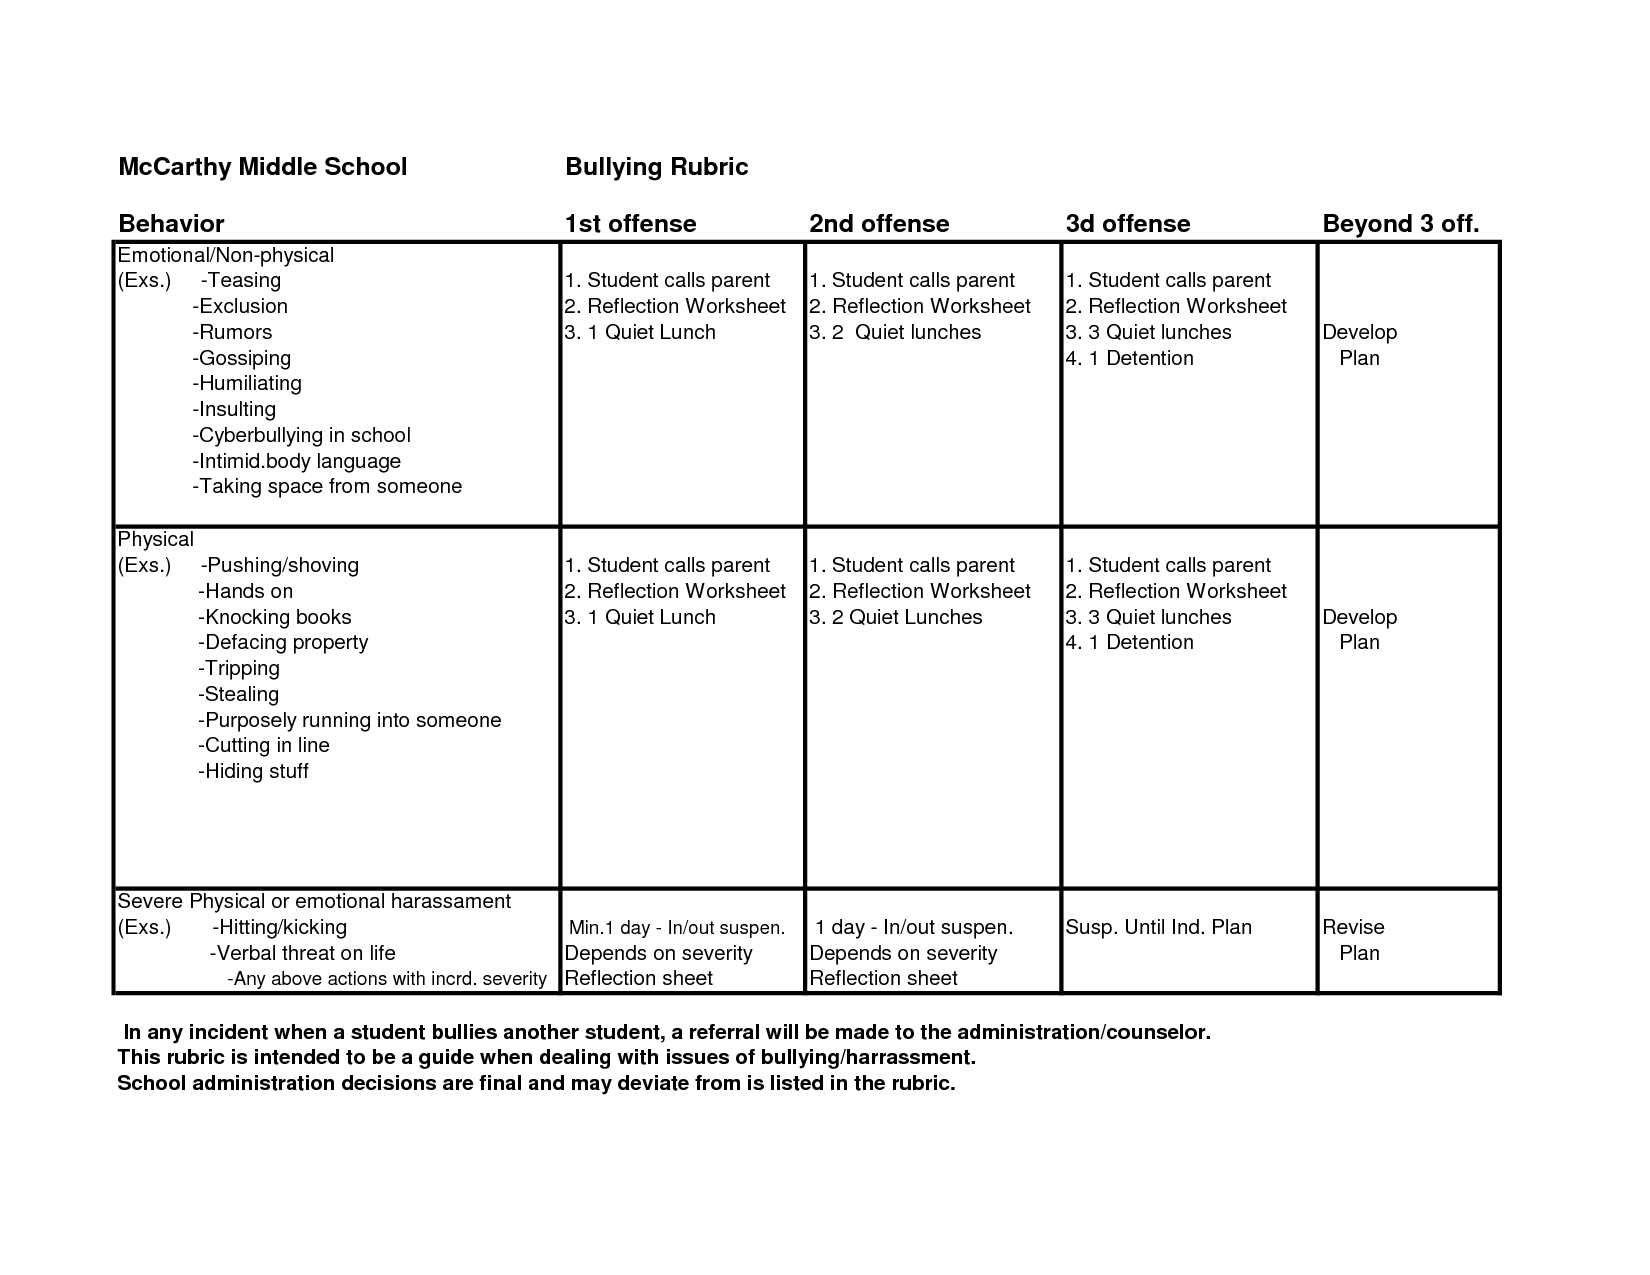 Behavior Reflection Worksheet Image